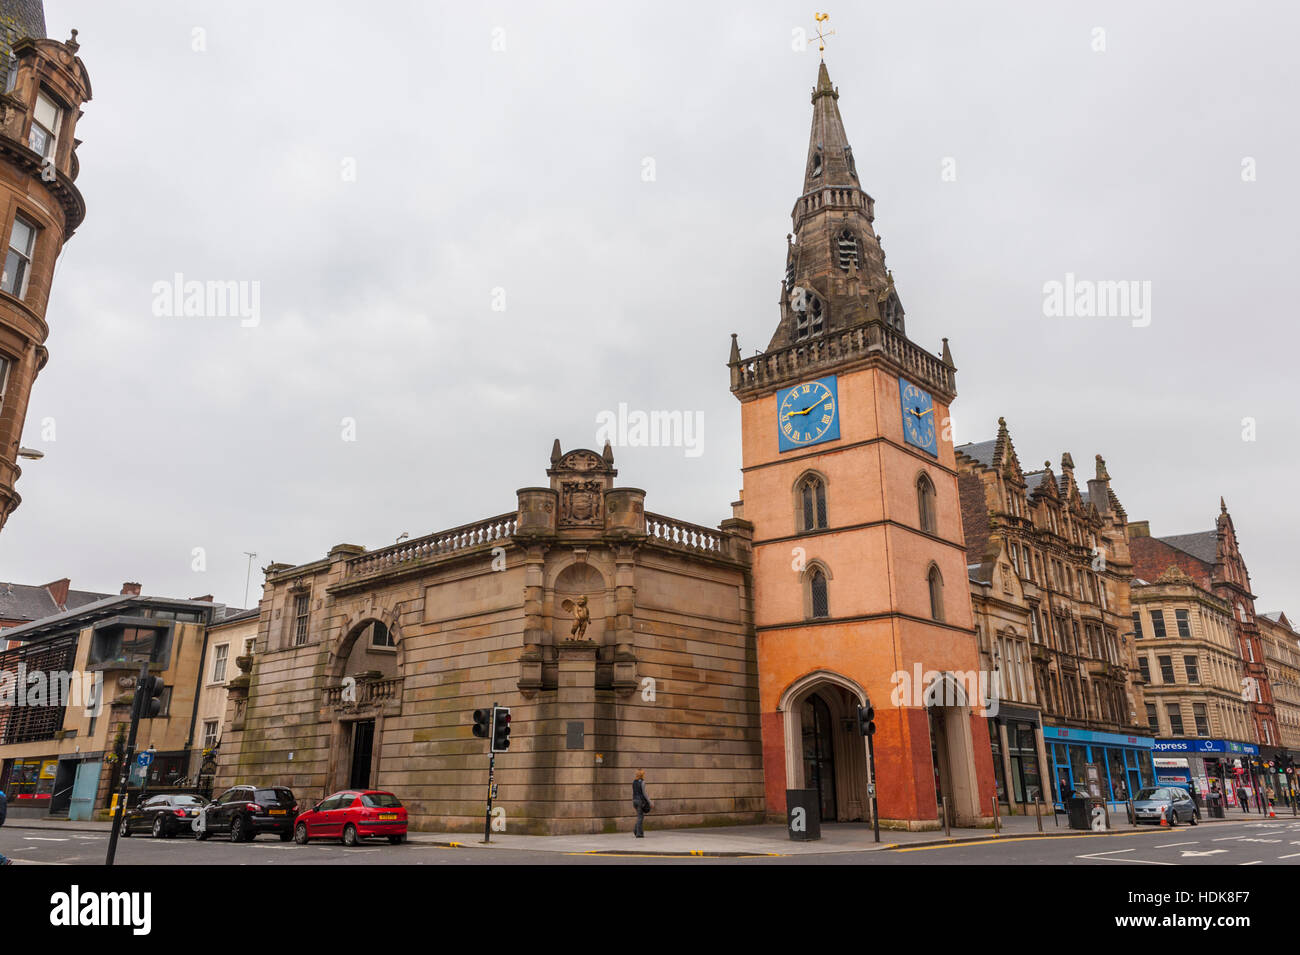 Le théâtre Tron, et le clocher de l'ancienne église de fer sur le Trongate. Situé dans le quartier de Merchant City, Glasgow Banque D'Images